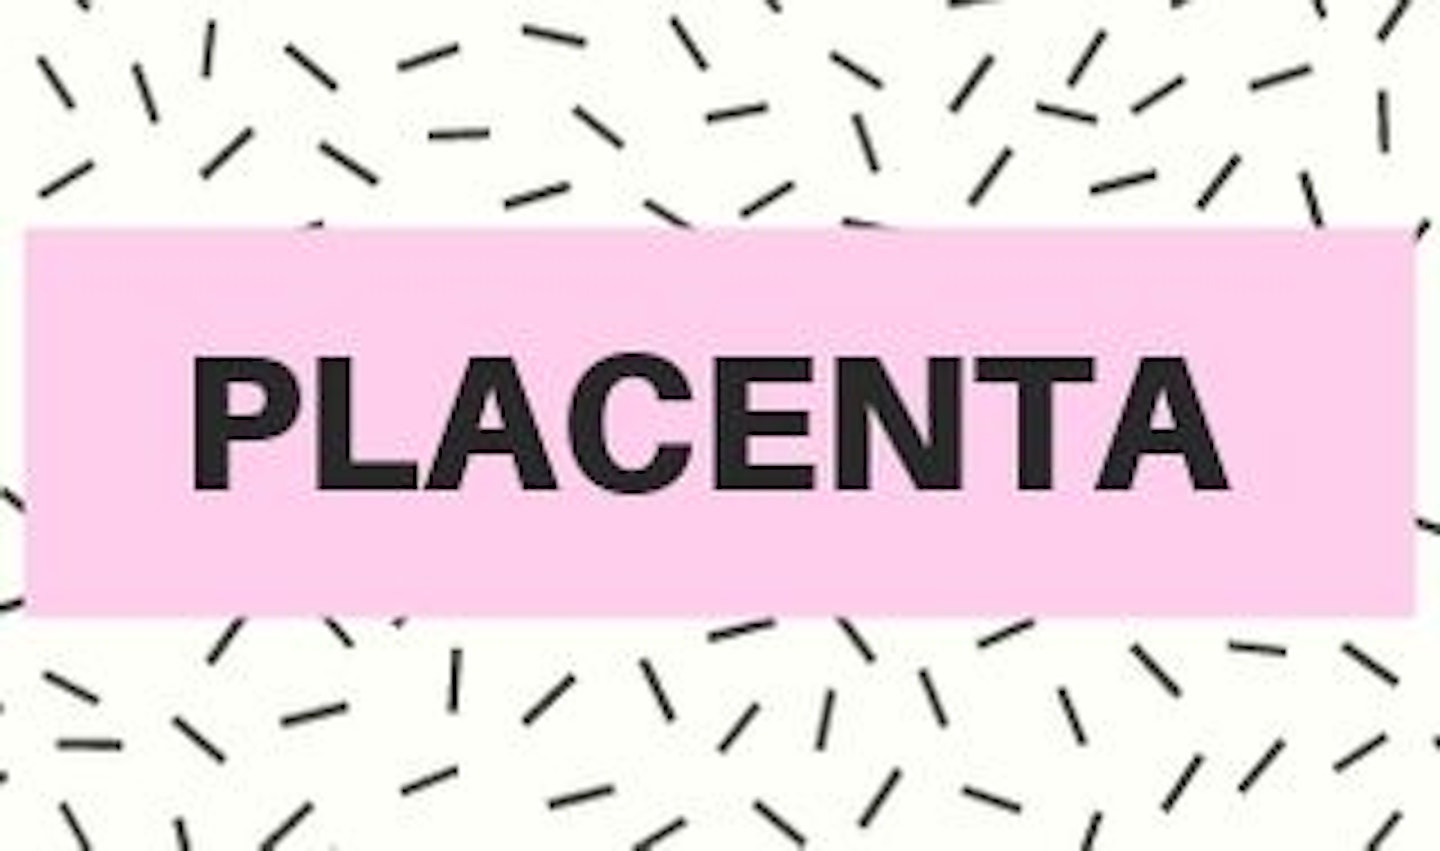 12) Placenta